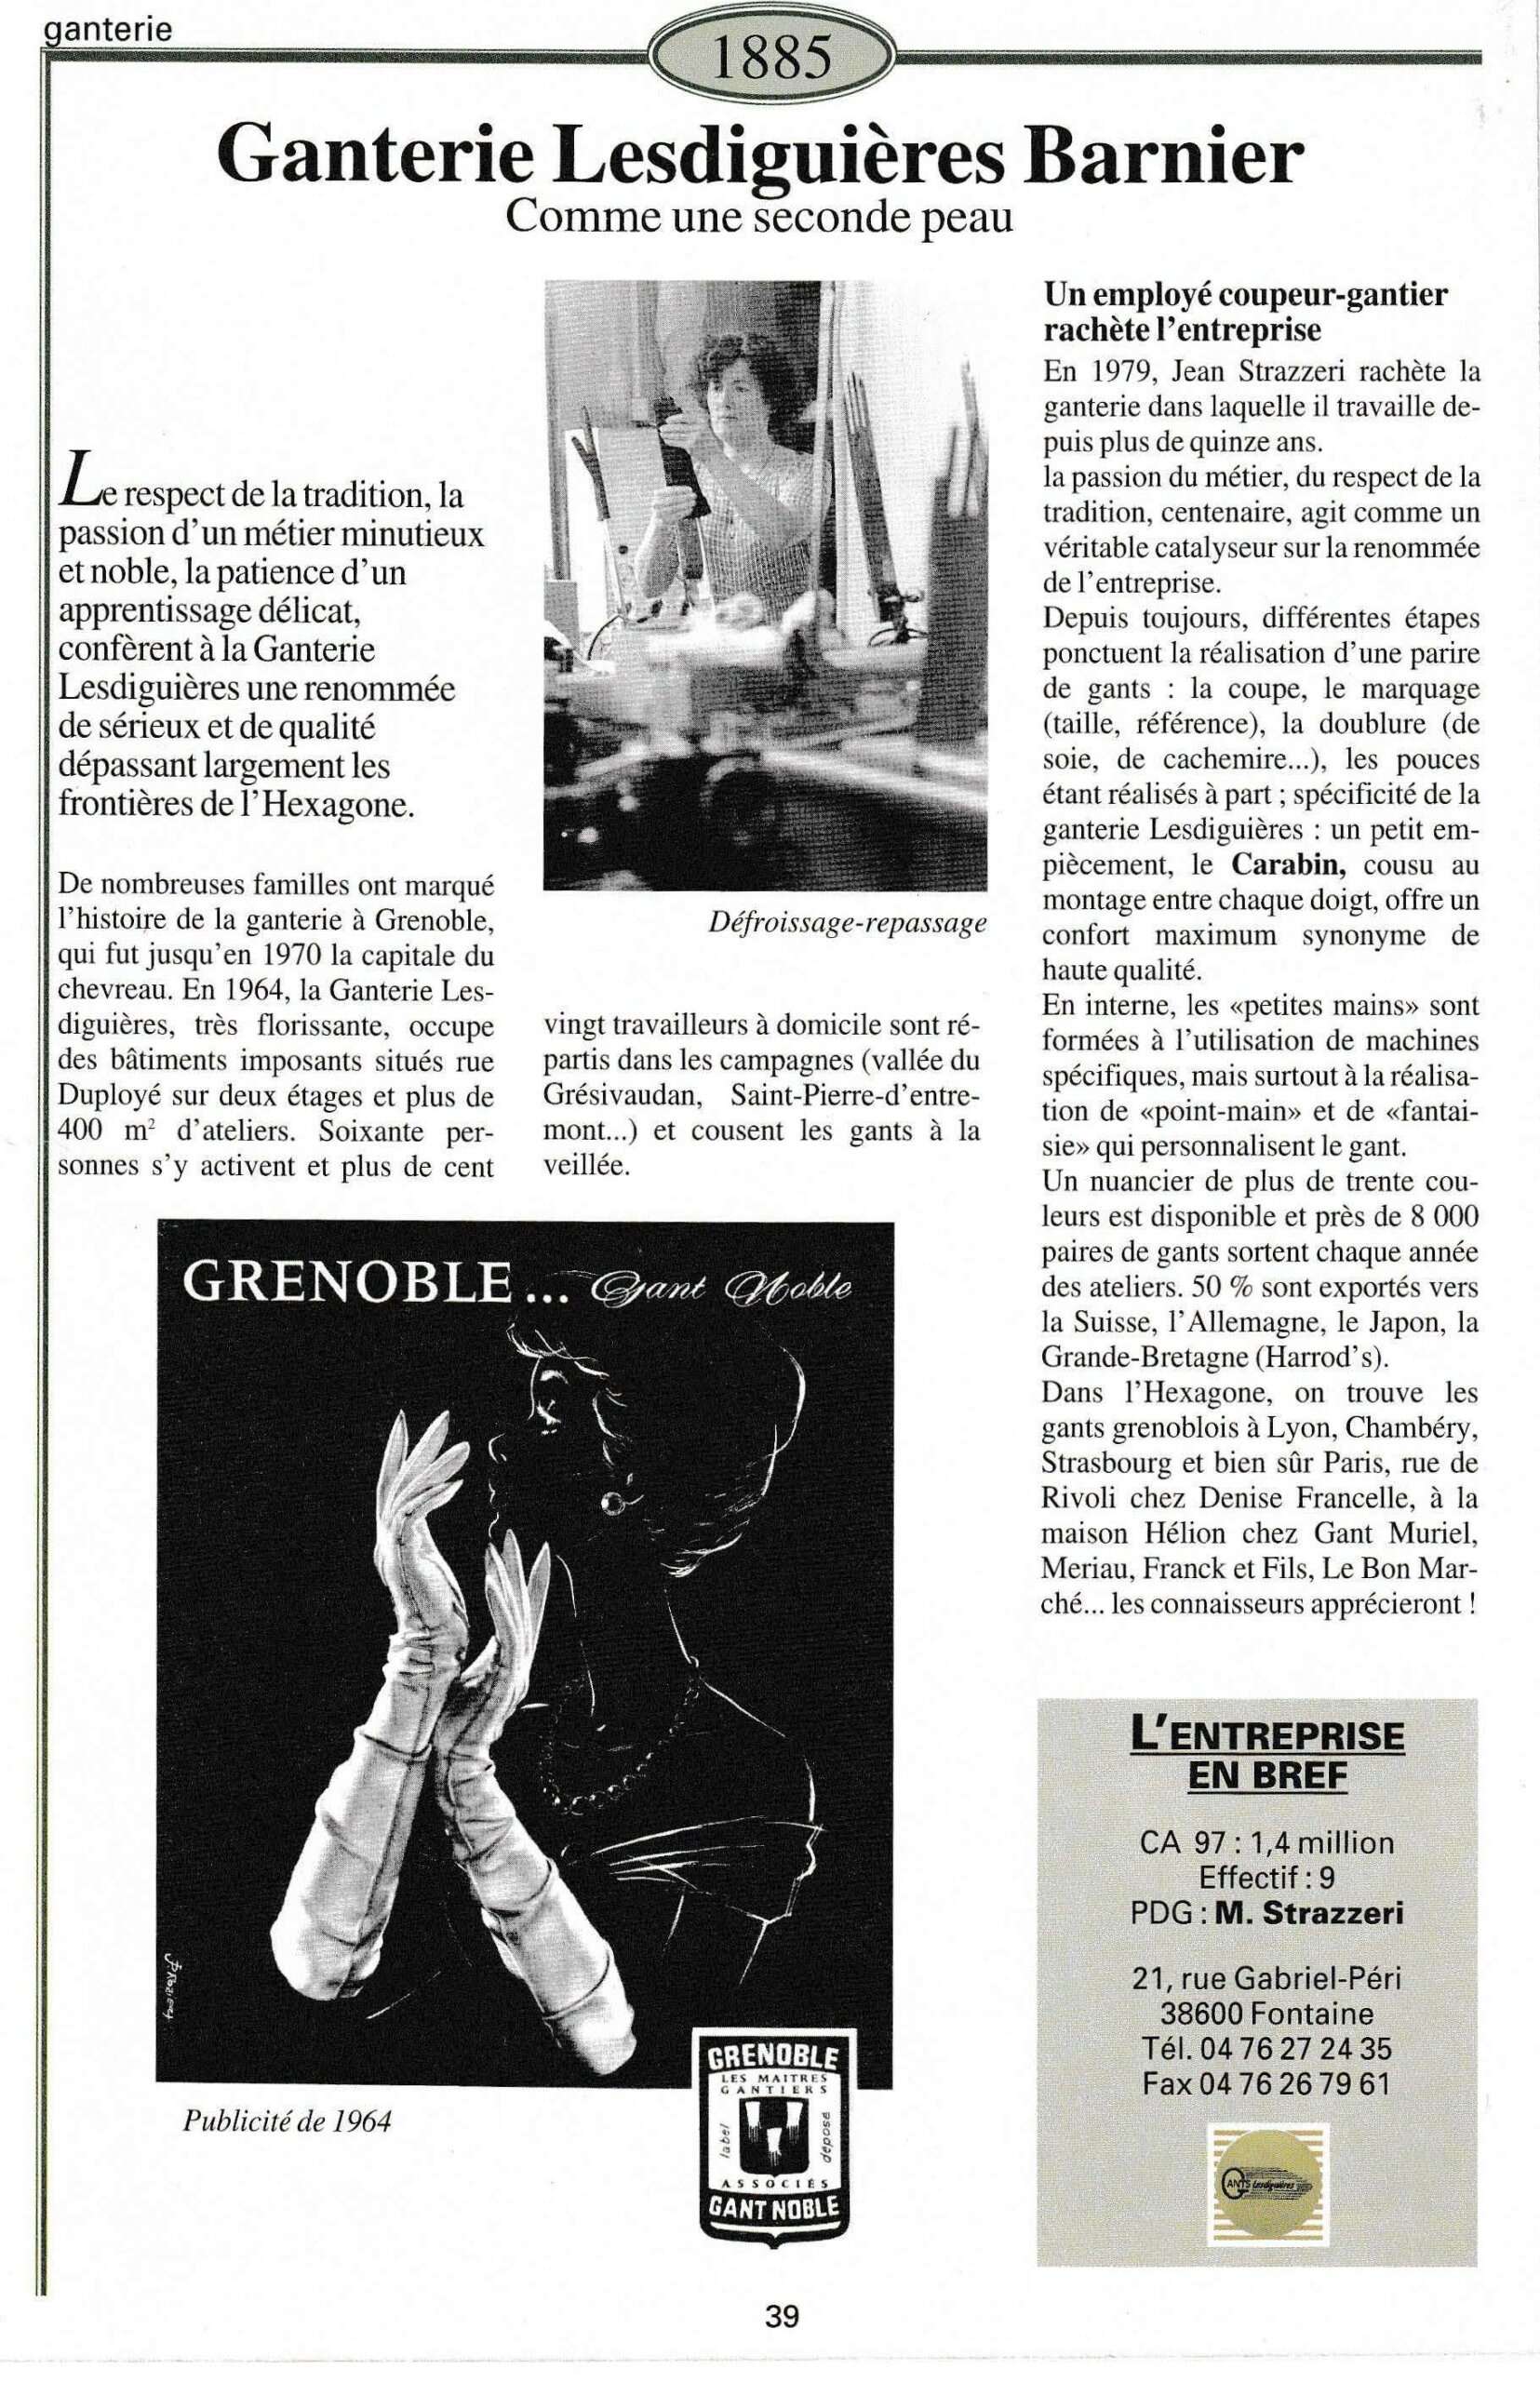 Ganterie Lesdiguières Barnier - fiche du supplément "Entreprises centenaires en Isère", publié par Les affiches de Grenoble et du Dauphiné, juin 1998.